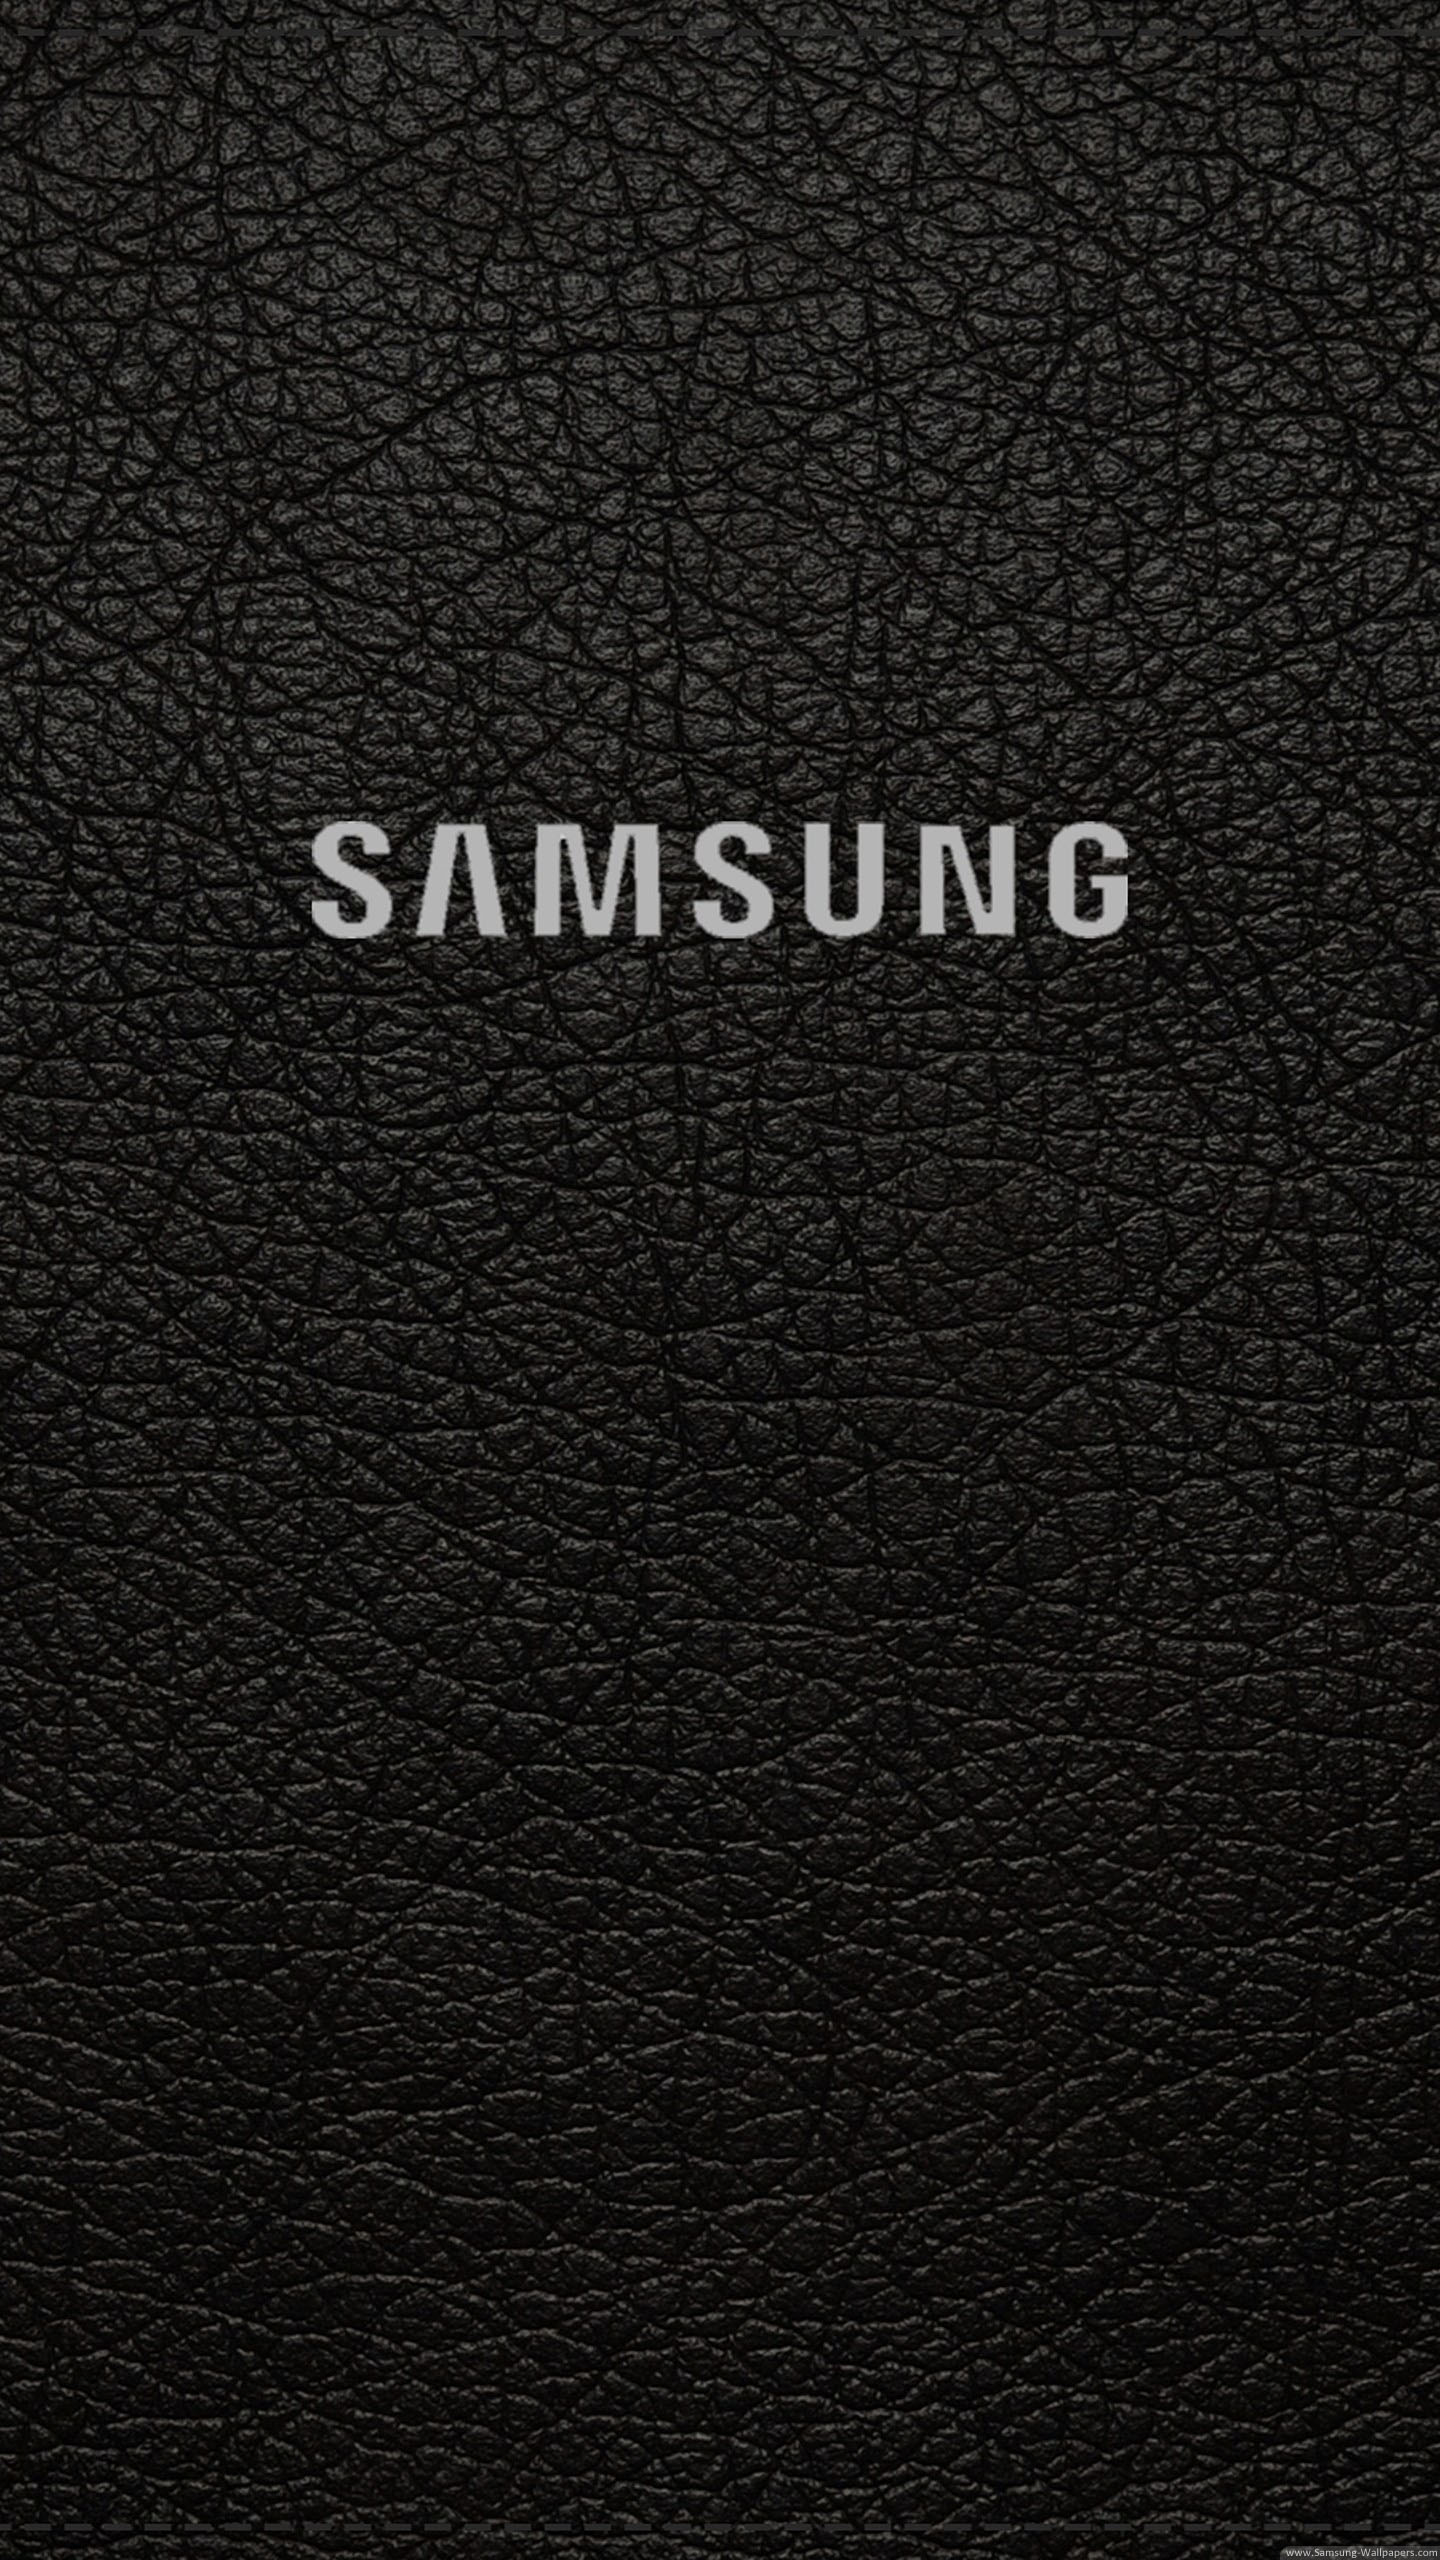 三星手机壁纸【1440x2560】samsung galaxy s6 三星logo 黑色 皮革